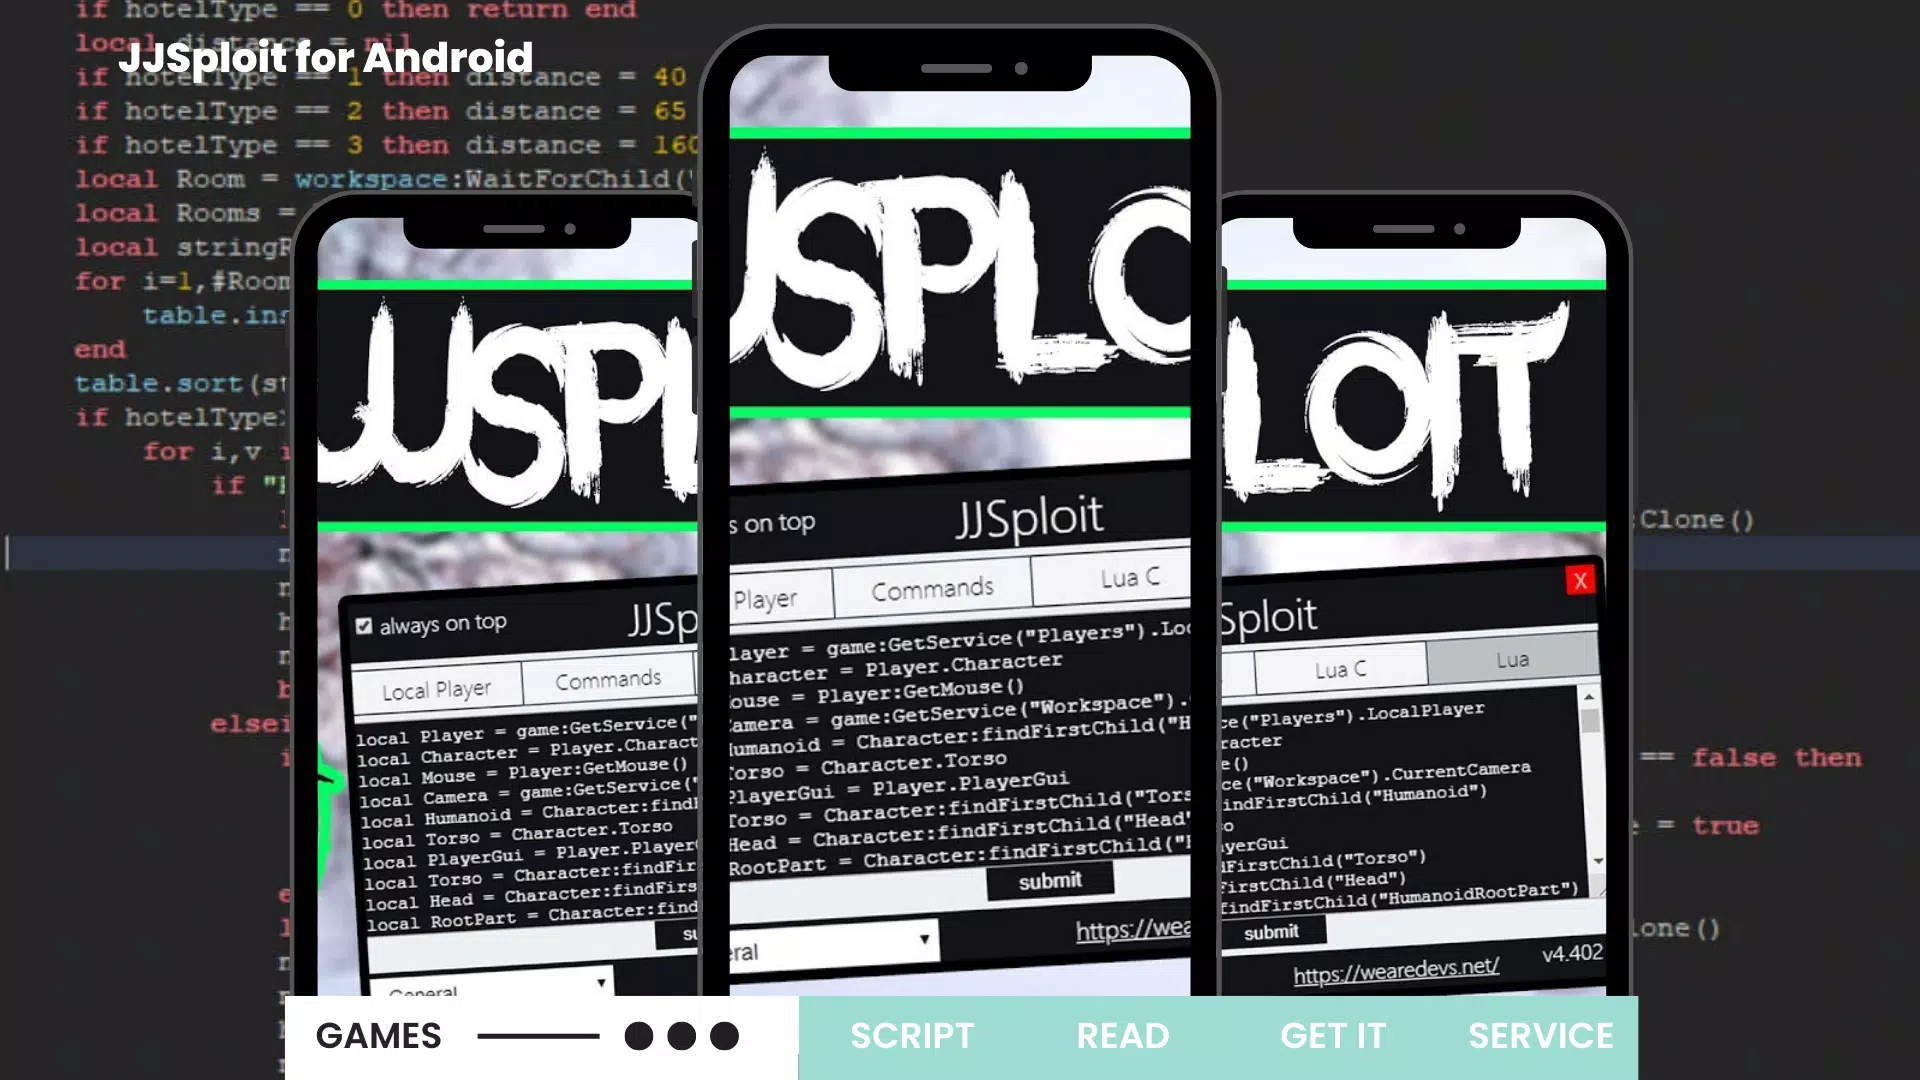 JJSploit - Download